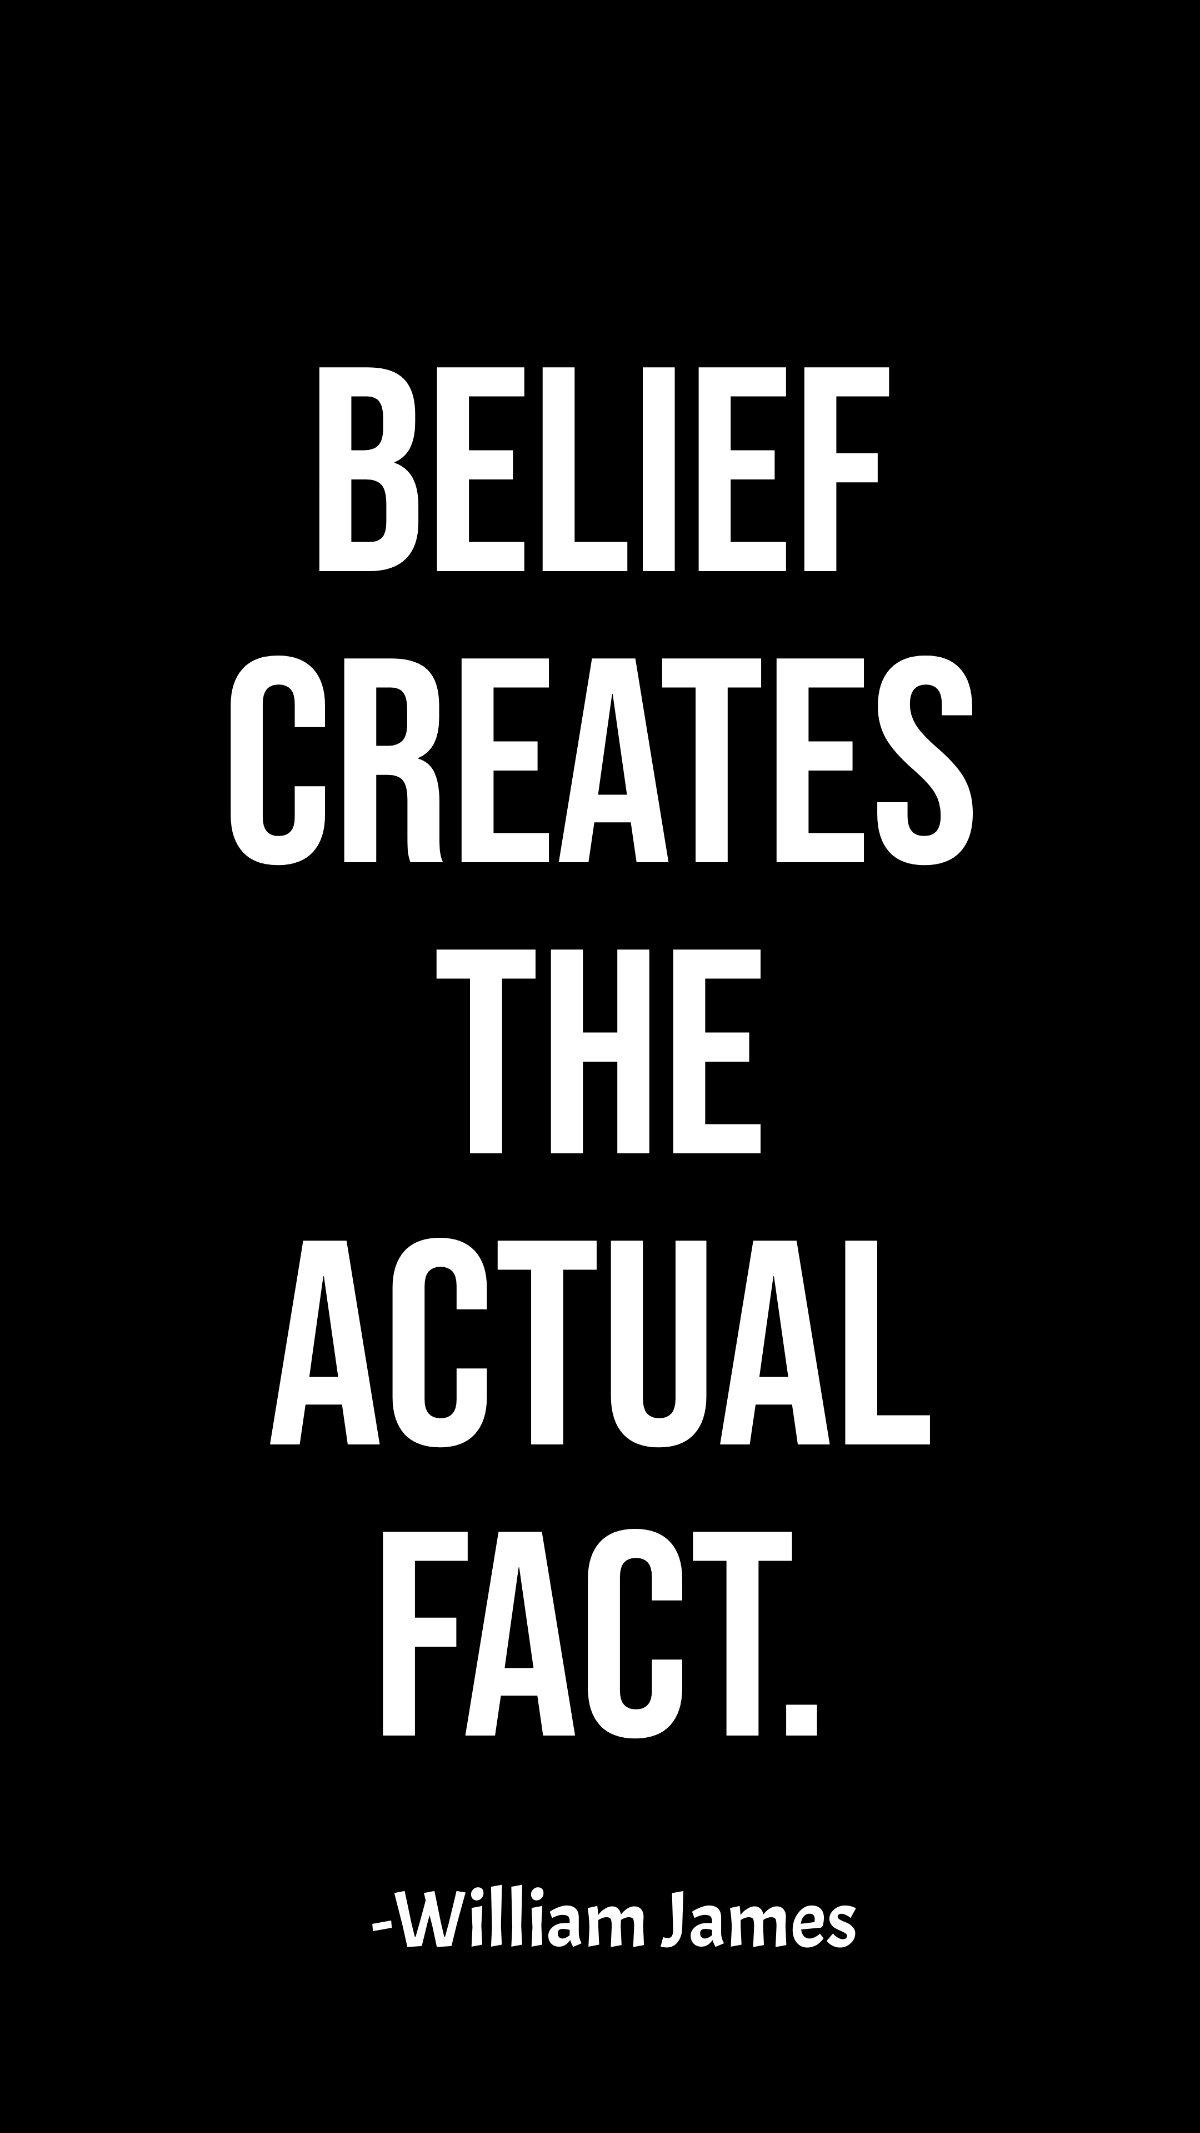 William James - Belief creates the actual fact.